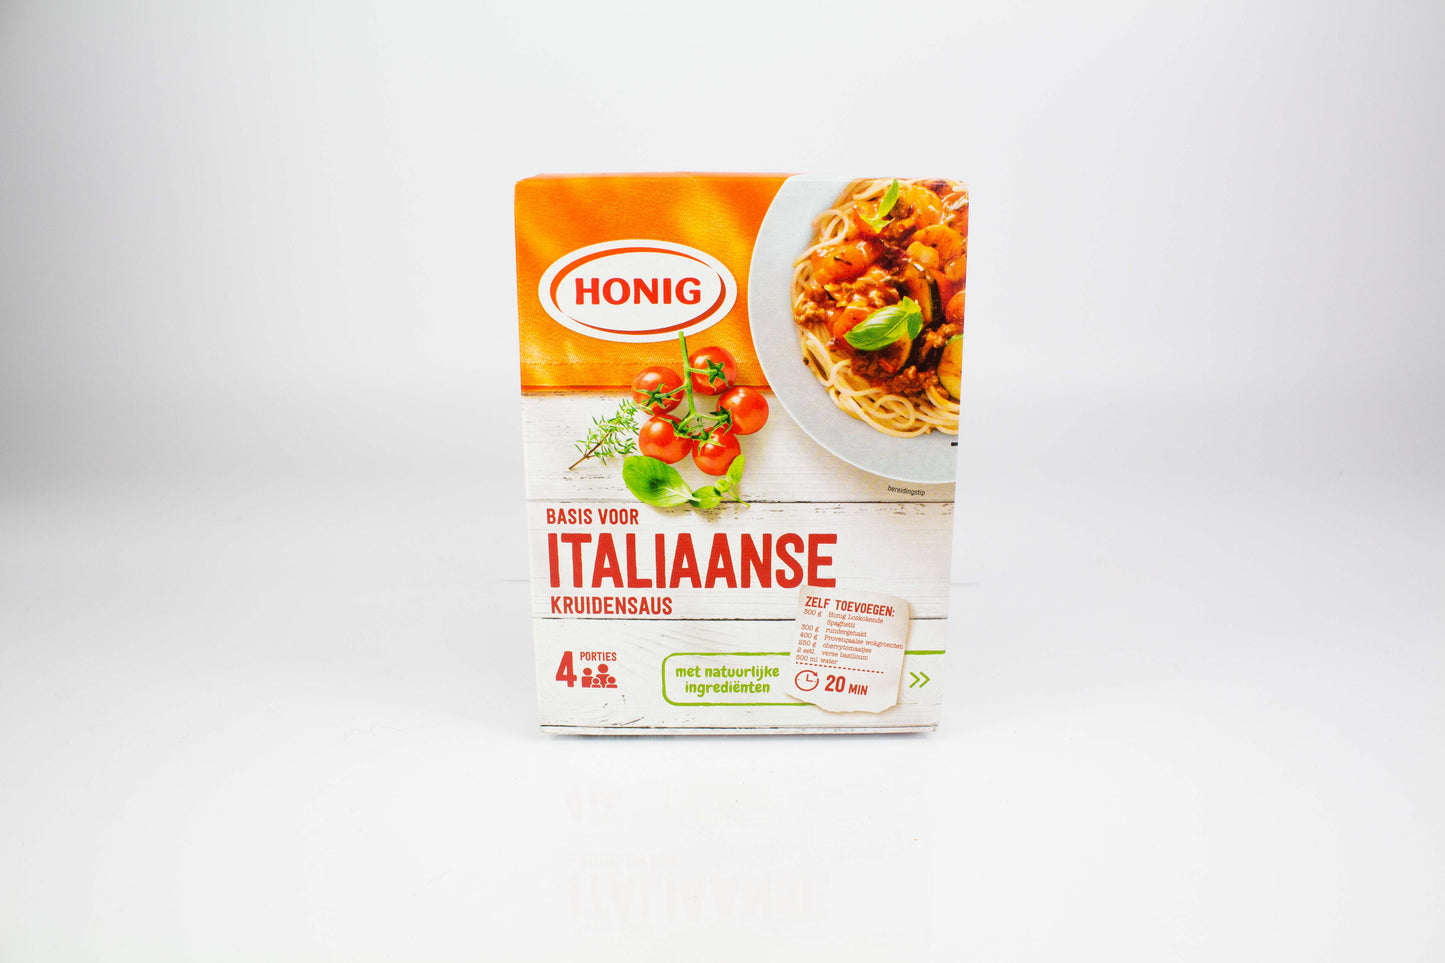 Aanmaakmix voor Italiaanse gekruide saus